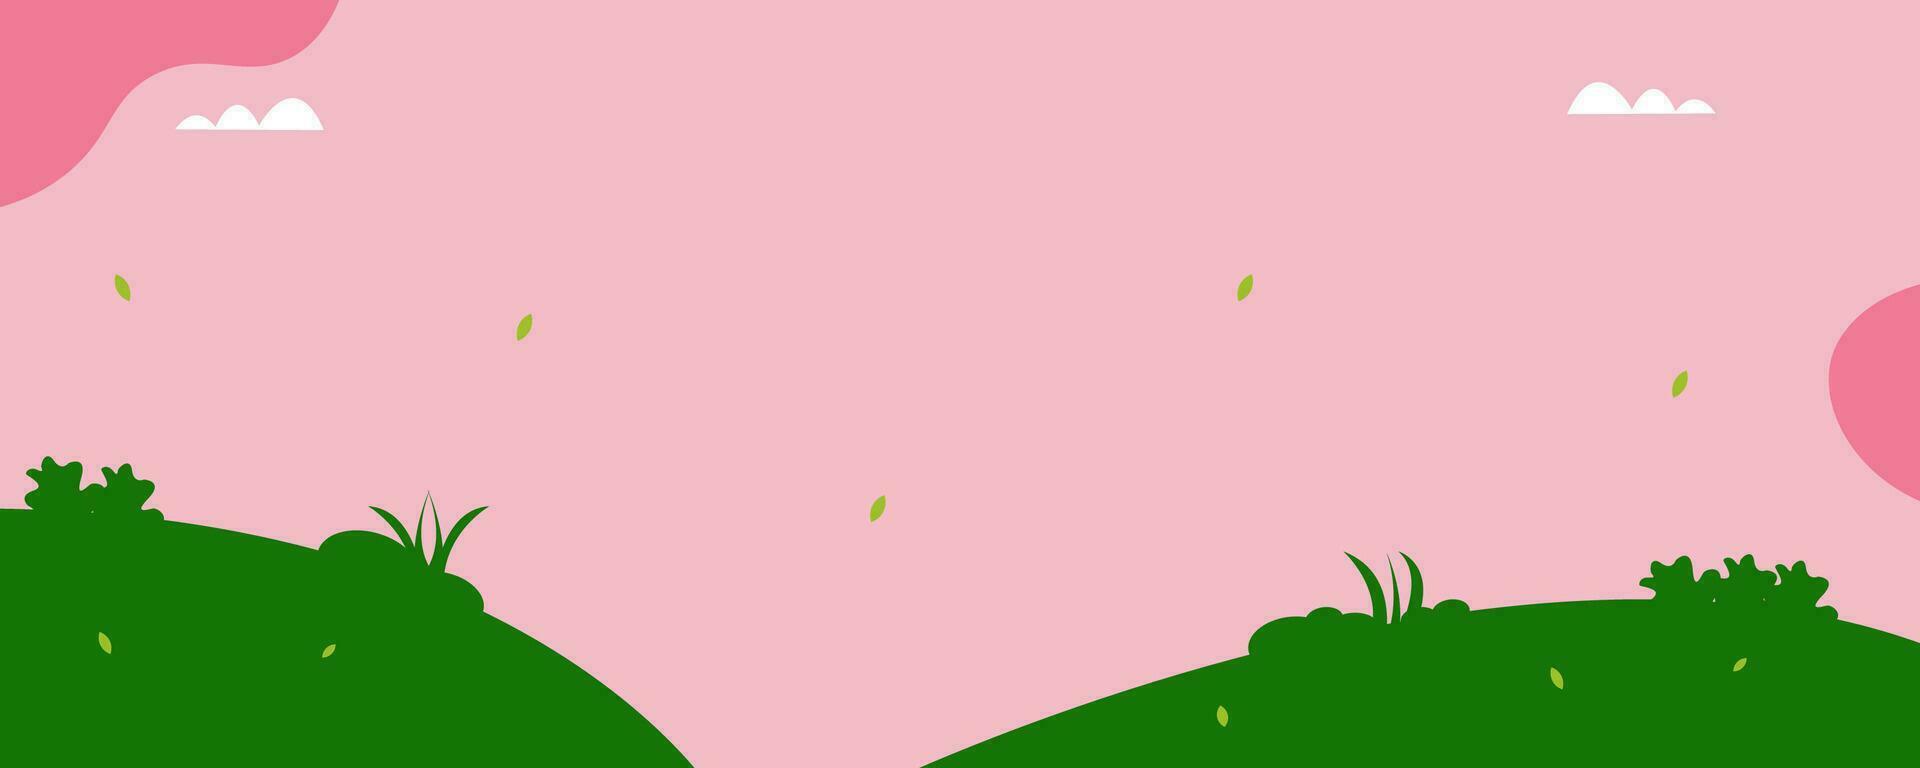 mooi pastel roze achtergrond met wolk, bloemen en groen heuvel vector